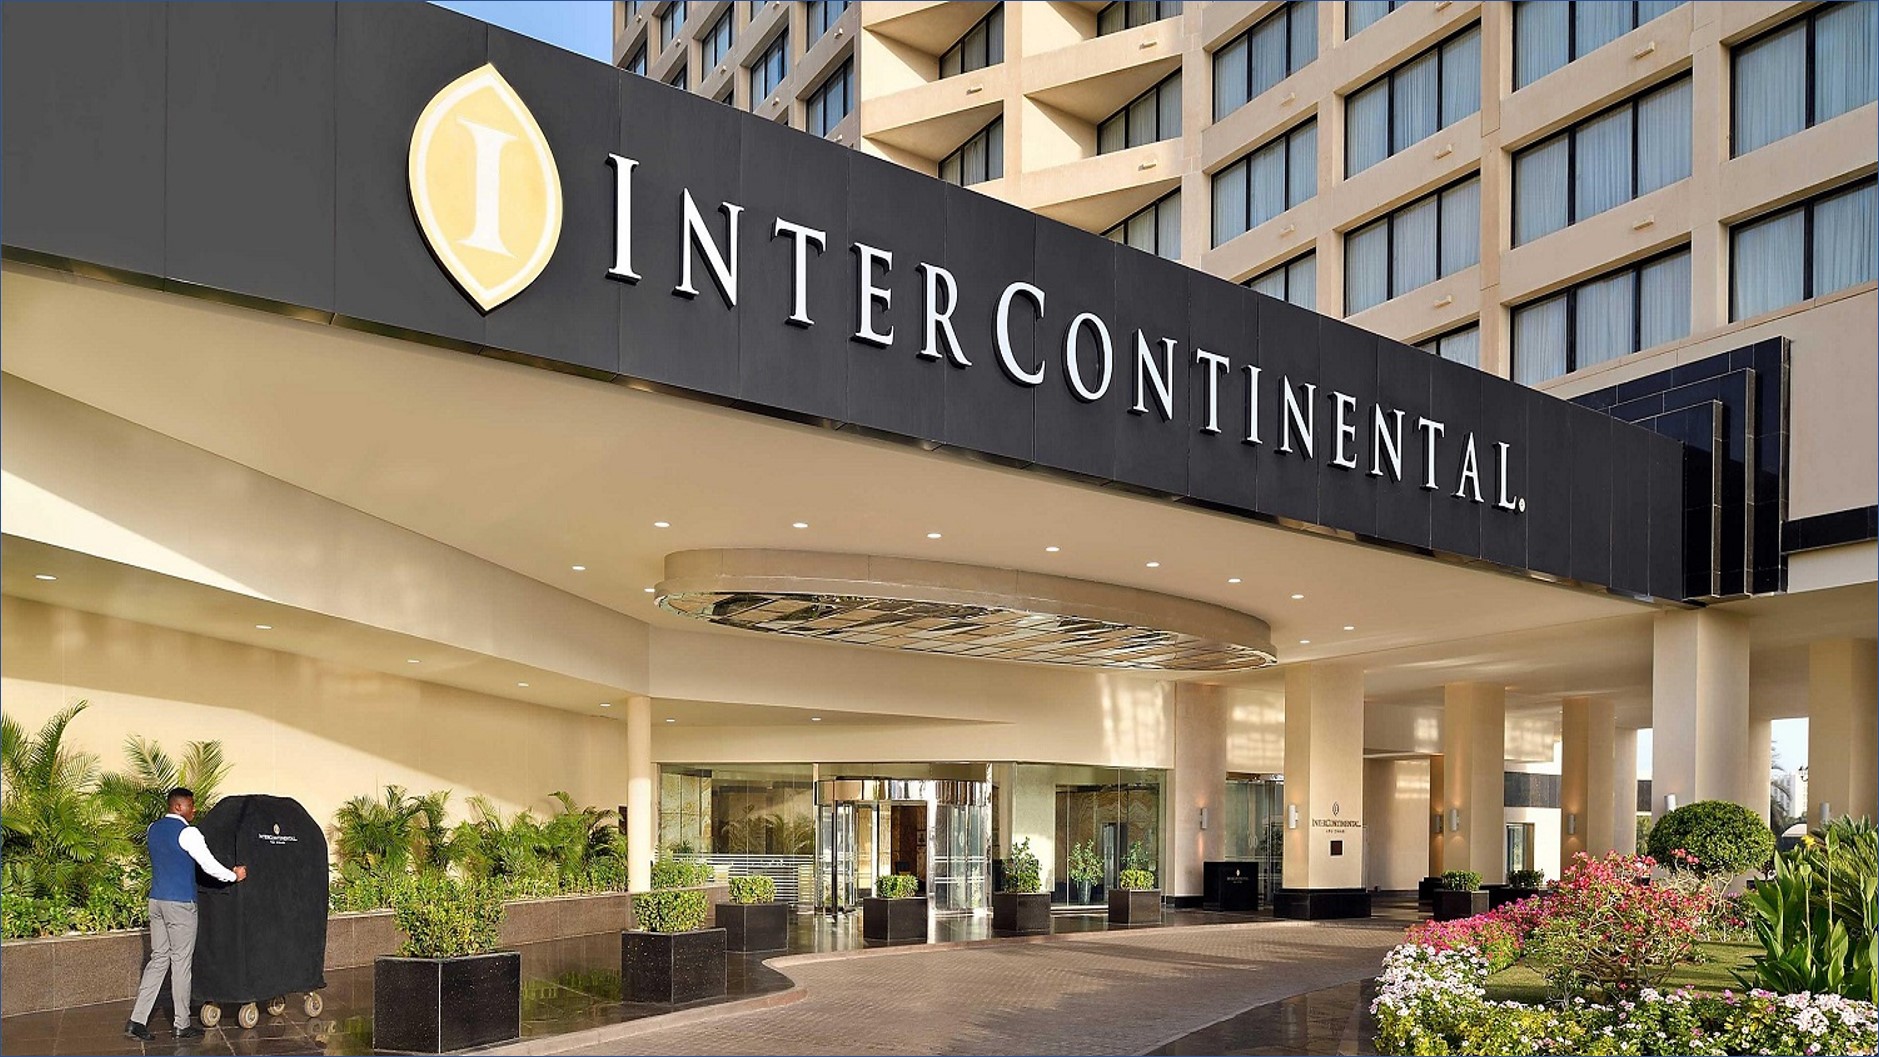 فنادق ومنتجعات انتركونتيننتال توفر فرص وظيفية في دبي